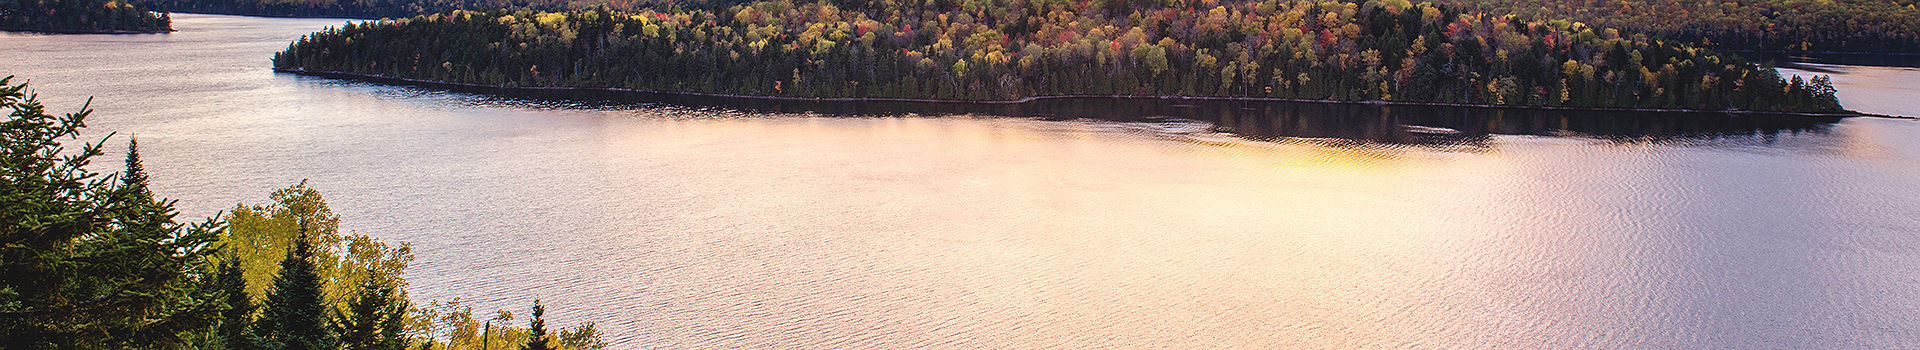 Lac Sacacomie, Tourisme Quebec, C.Savard